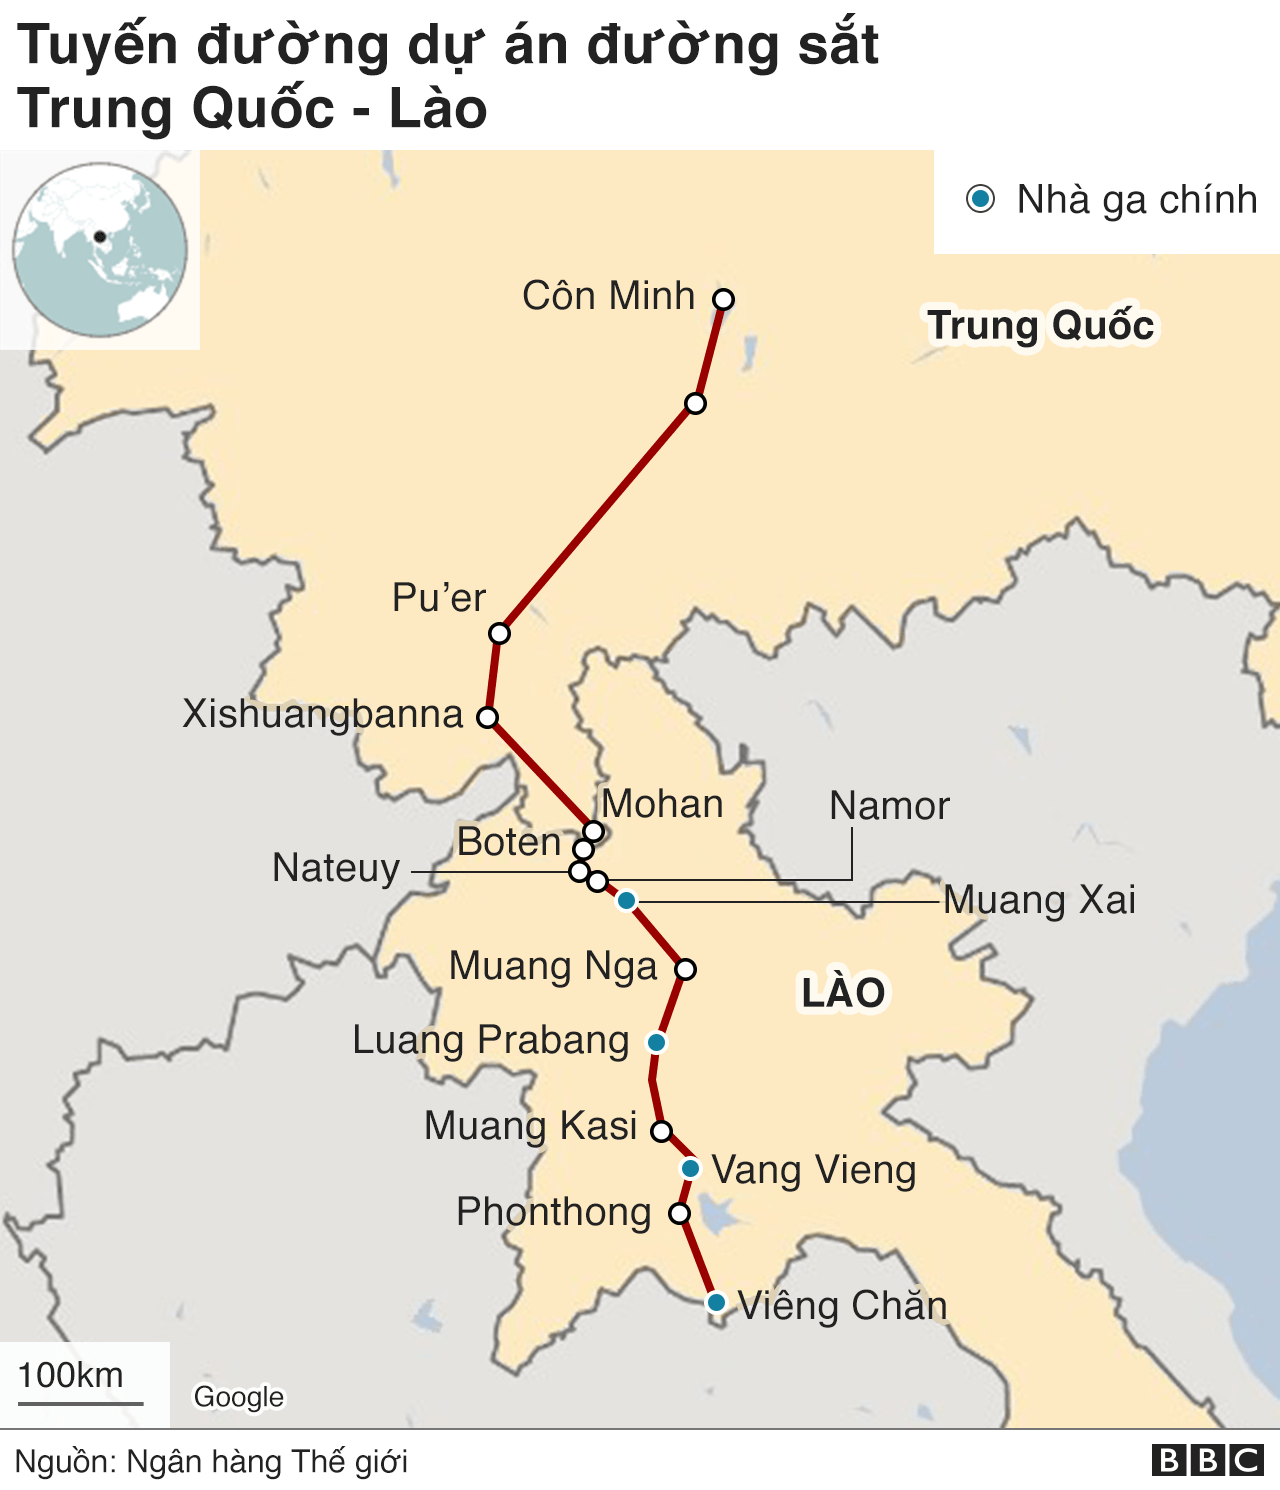 Đường sắt cao tốc Lào - Trung Quốc: Đường sắt cao tốc Lào - Trung Quốc là sự kết nối vùng Đông Nam Á và vùng Bắc Á, mang đến nhiều lợi ích cho cả 3 nước. Với tốc độ cao, an toàn và tiện ích cho việc di chuyển, đường sắt cao tốc này giúp tăng cường hợp tác kinh tế và văn hóa giữa các quốc gia, đồng thời đem lại nhiều cơ hội cho du lịch và đầu tư. Hãy cùng trải nghiệm đường sắt cao tốc Lào - Trung Quốc và khám phá nét đẹp của vùng Đông Nam Á.